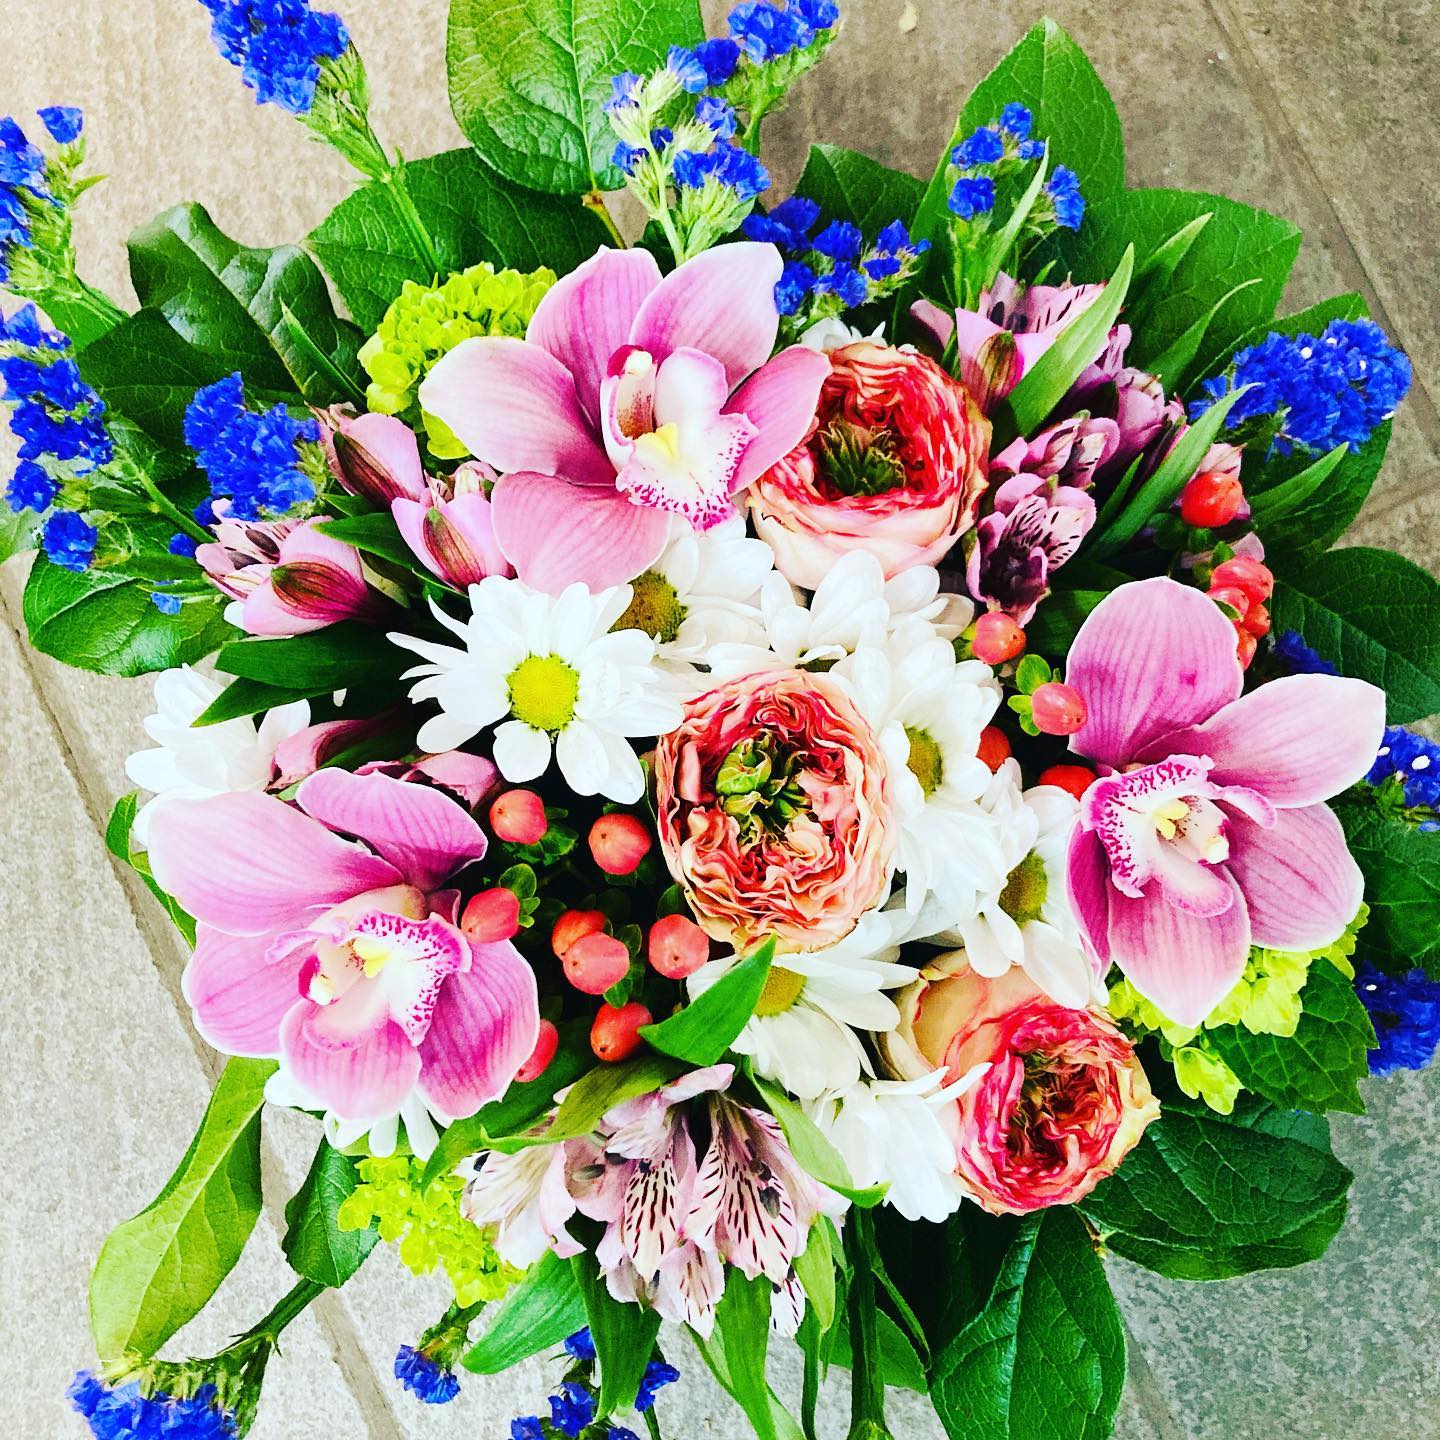 La fête des mères préparez-vous d’avance appeler au 514-529-5365 #fleuriste #fleuristemontreal #fetedesmeres #bouquet #pivoines #renoncules #flowers